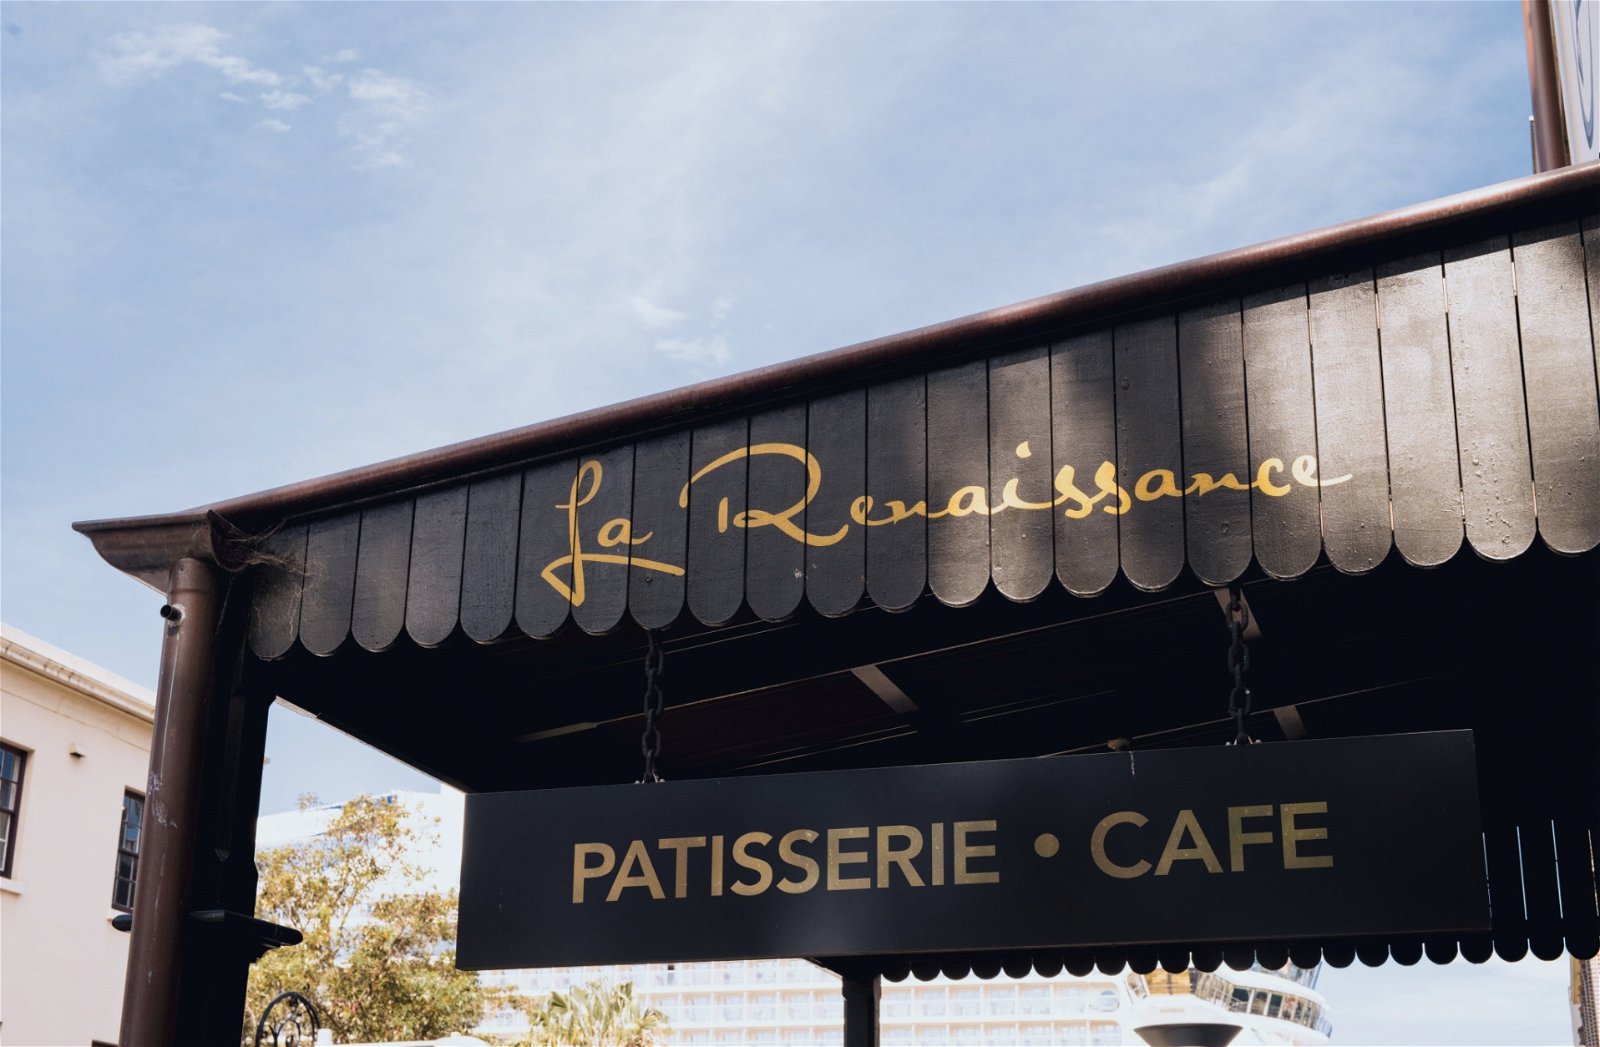 La Renaissance - Pubs Sydney